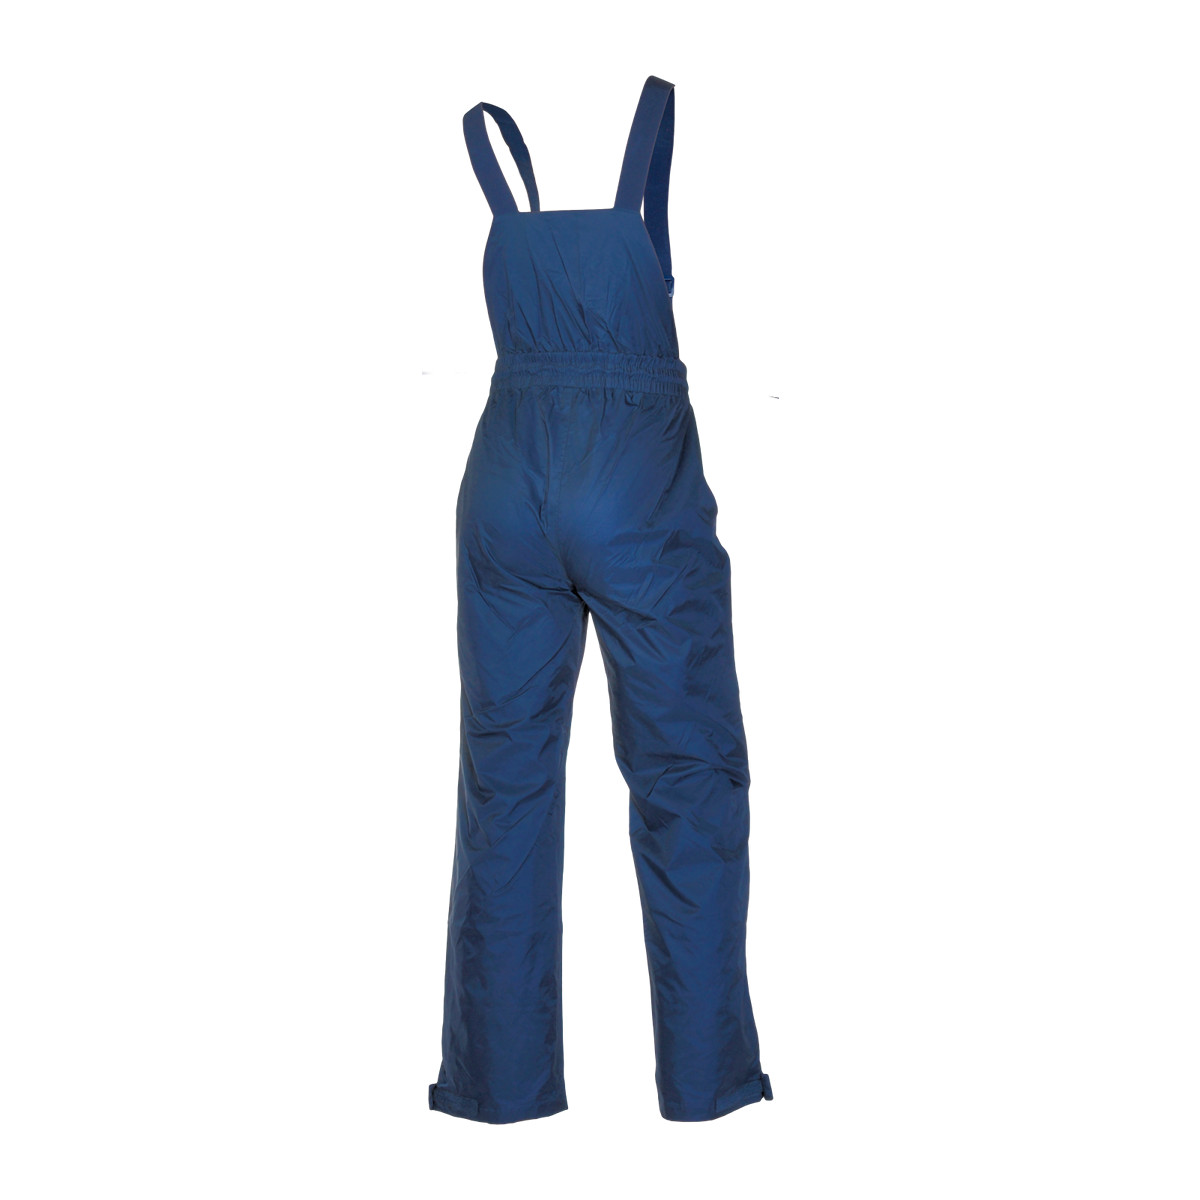 Dry Fashion Baltic Crew pantalon de voile unisexe bleu marine, taille L